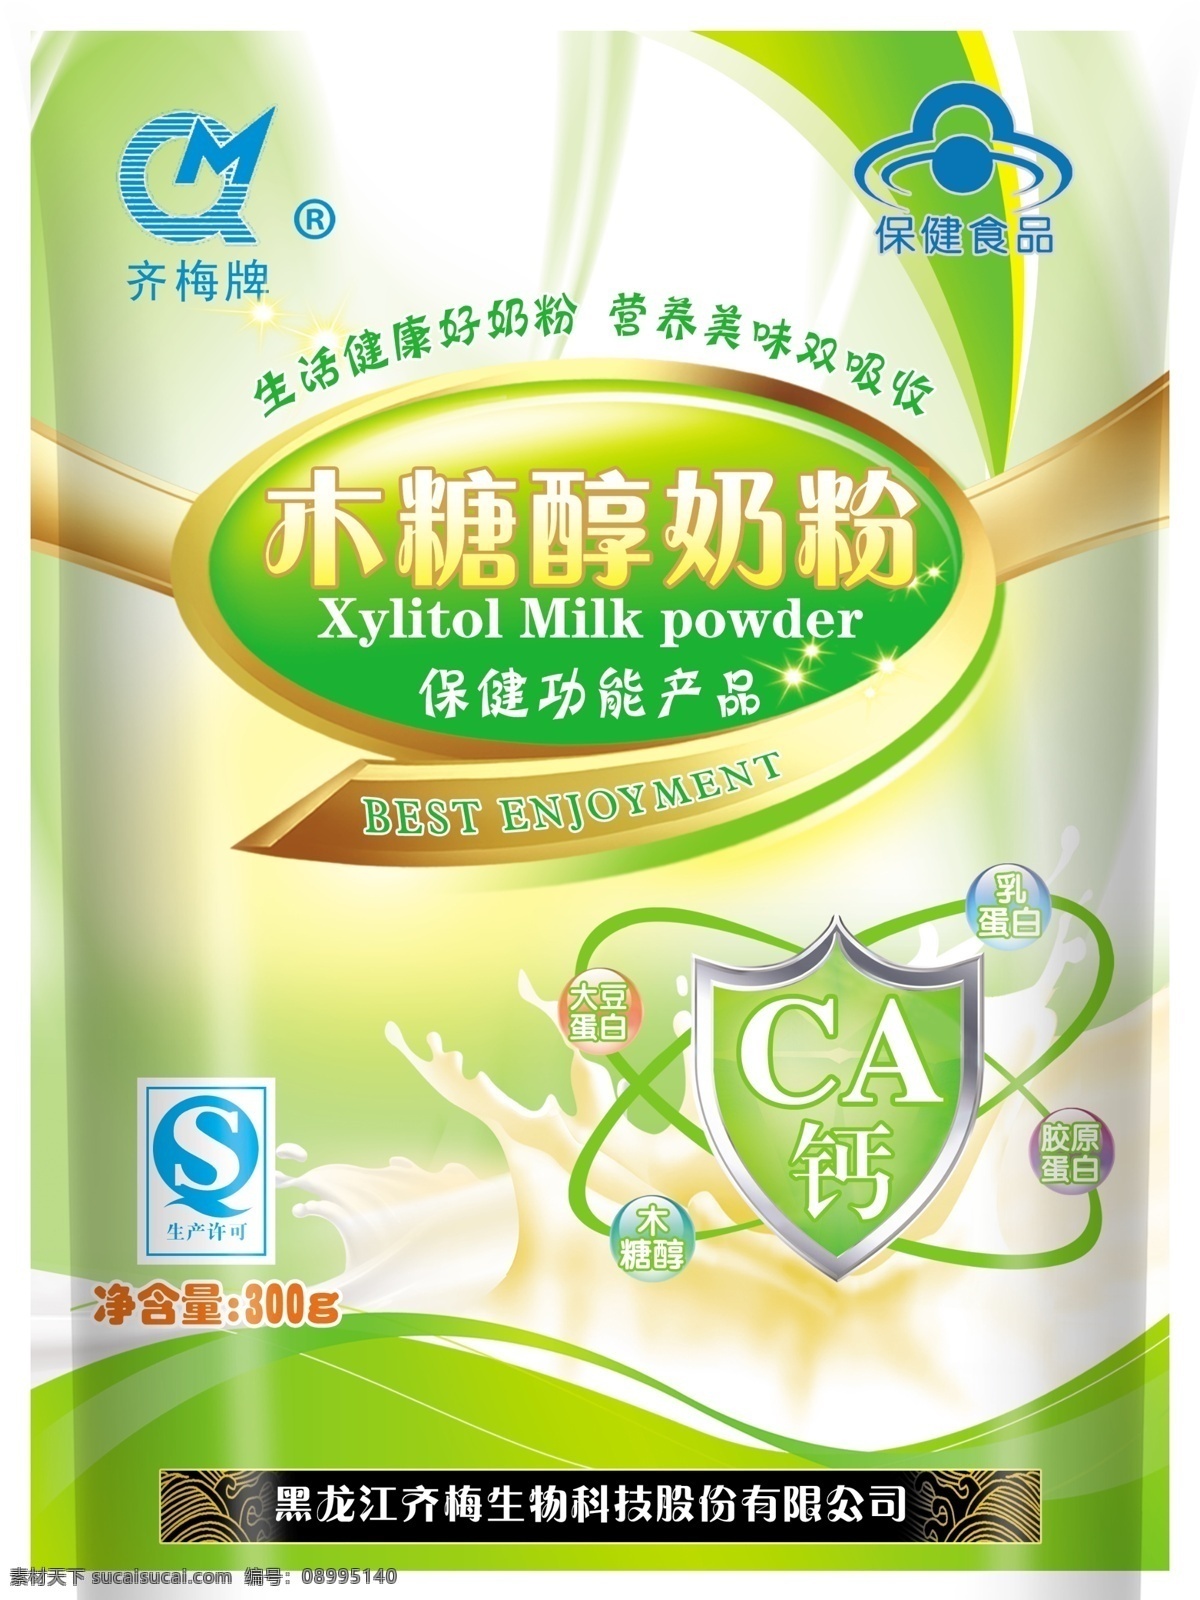 奶粉 包装设计 模板 木糖醇奶粉 齐梅牌 qs 保健食品 净含量 功能盾 牛奶 效果图 广告设计模板 源文件